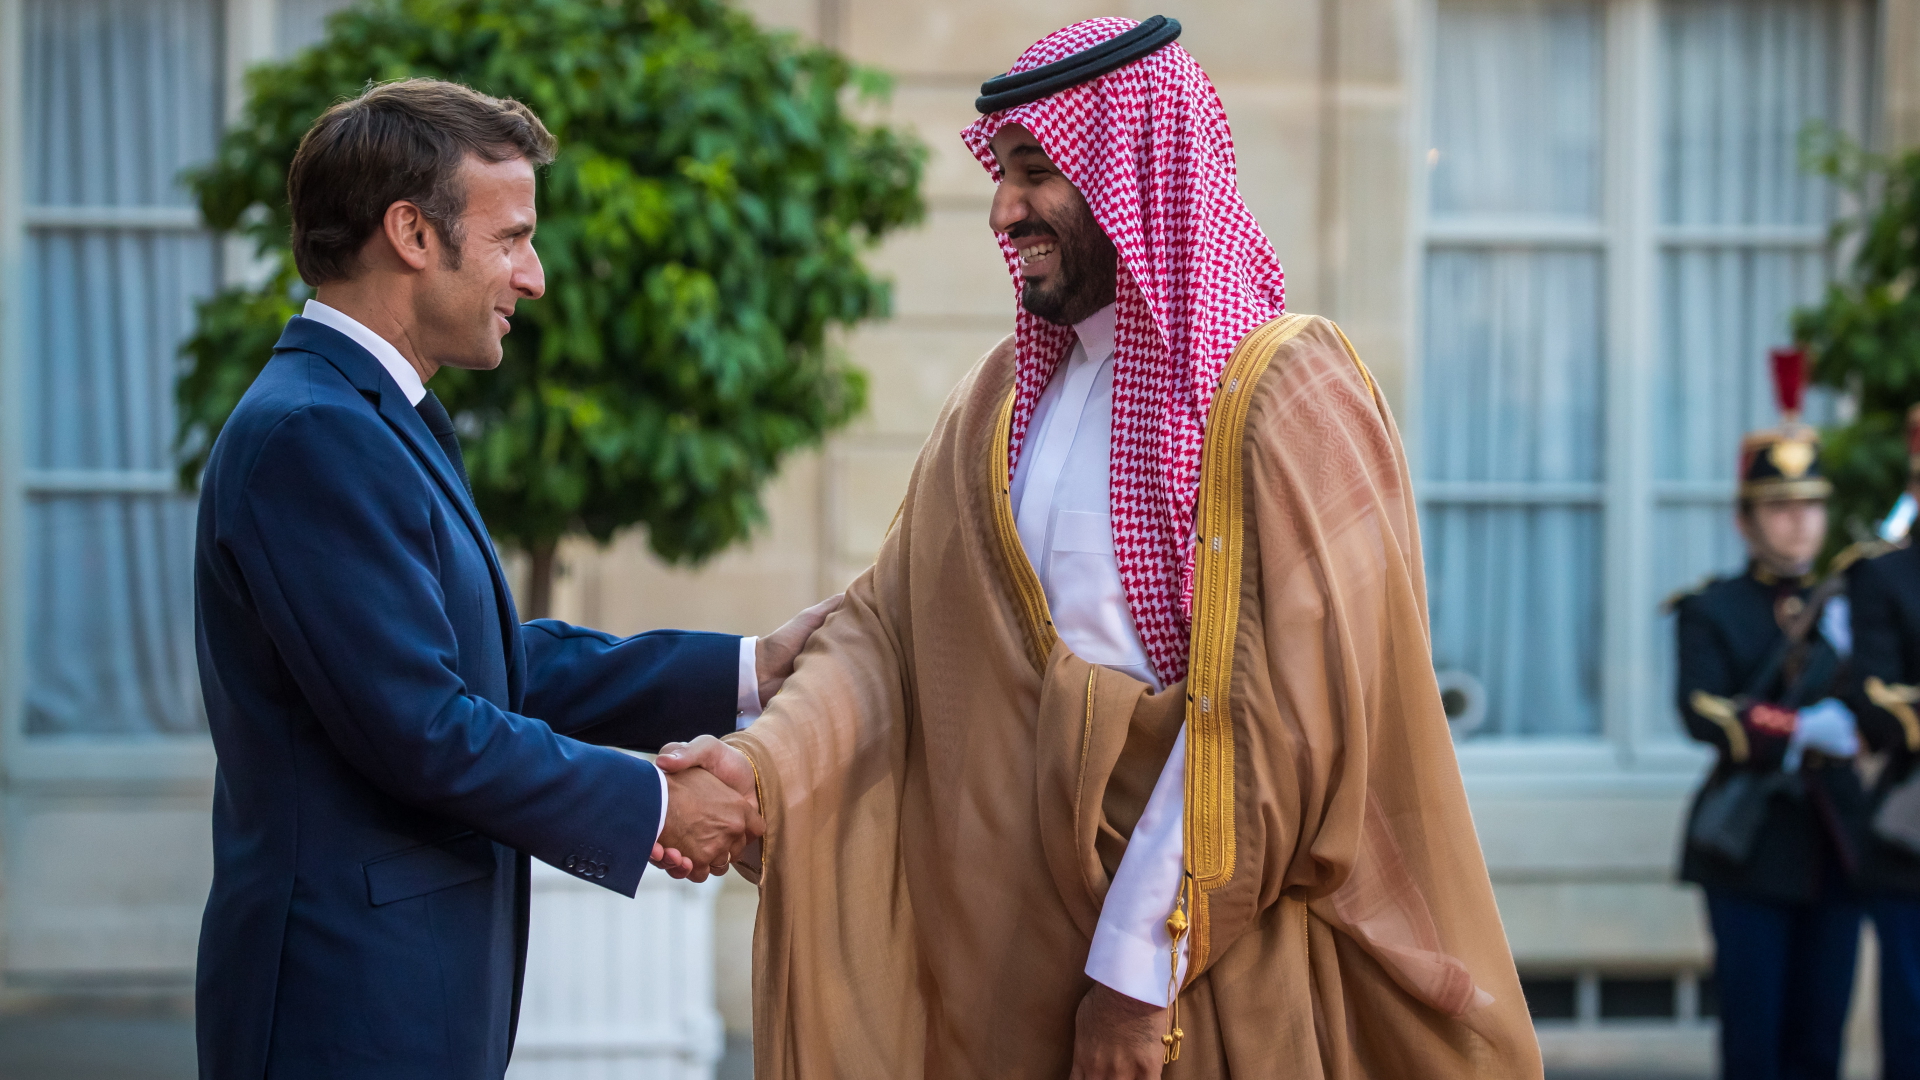 Emmanuel Macron und der Mohammed bin Salman geben sich die Hand | EPA